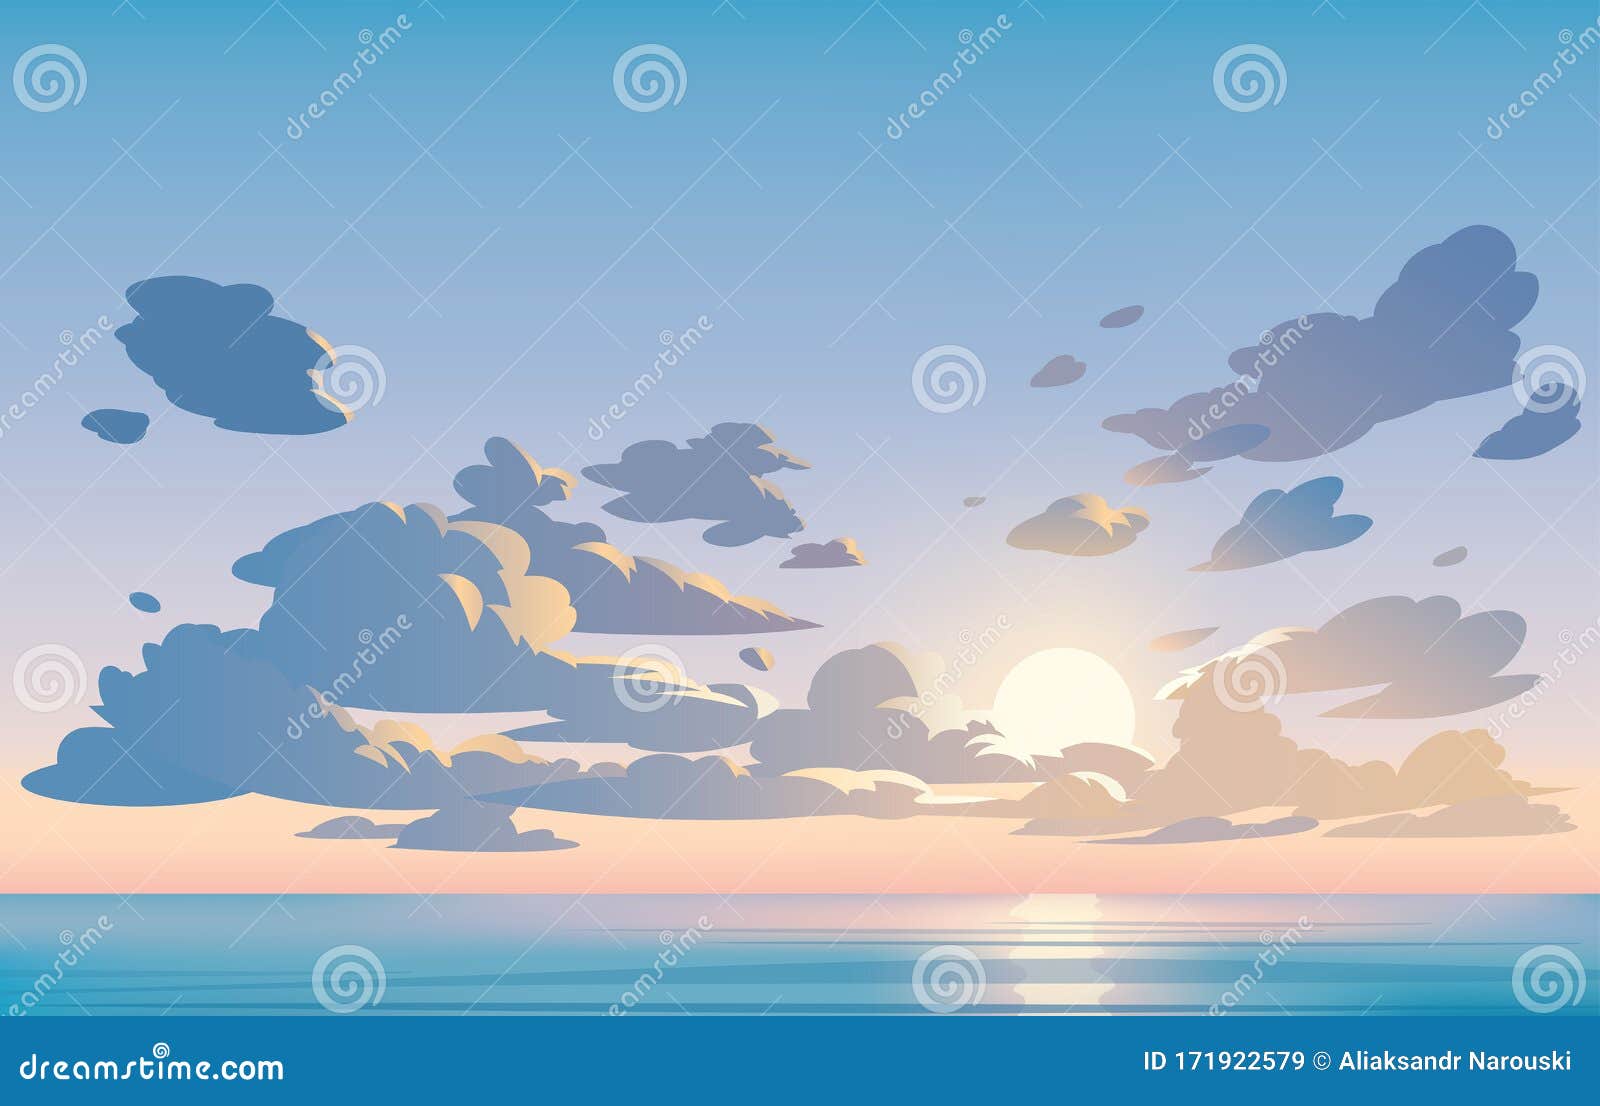 Vector phong cảnh đồng bằng đầy mây trời - Làm mới không gian trang trí màn hình của bạn với vector phong cảnh đồng bằng đầy mây trời thật tuyệt đẹp và lãng mạn. Được thiết kế vô cùng tinh xảo và chuyên nghiệp, chắc chắn sẽ không làm bạn thất vọng.